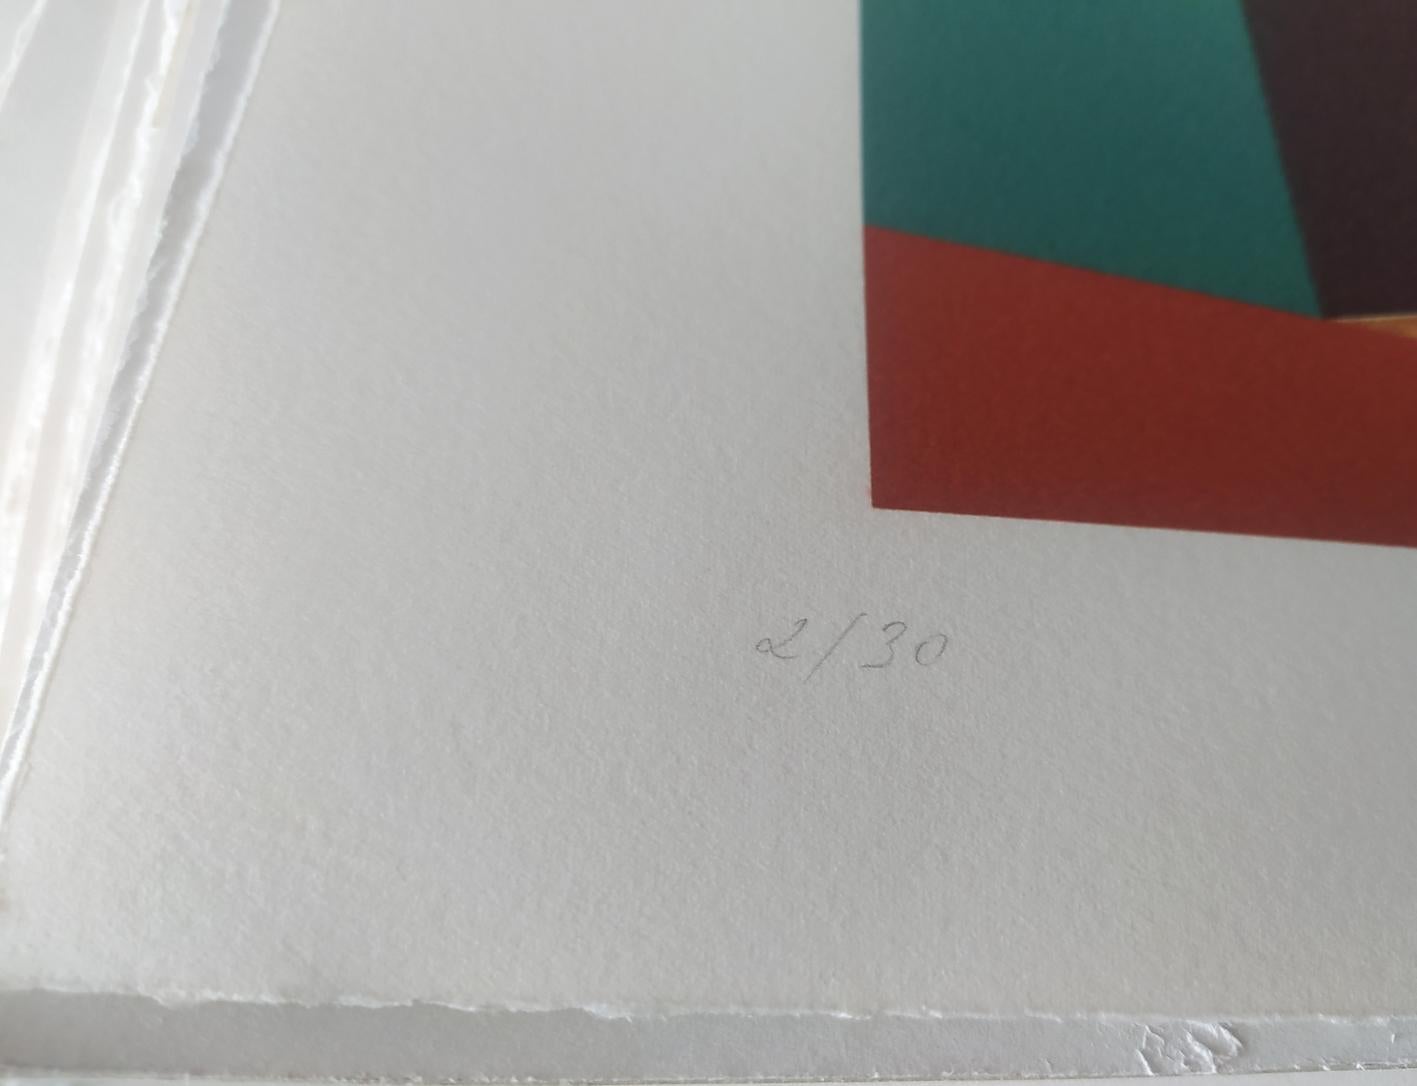 Camping, 2009

Digitaler Pigmentdruck mit Ultrachrome-Tinte auf Fabriano Rosaspina-Papier. Vom Künstler handsigniert, mit Echtheitszertifikat. Auflage von 30 Stück  (Ungerahmt)

Seine Werke wurden im Reina Sofía Museum in Madrid, in der Royal